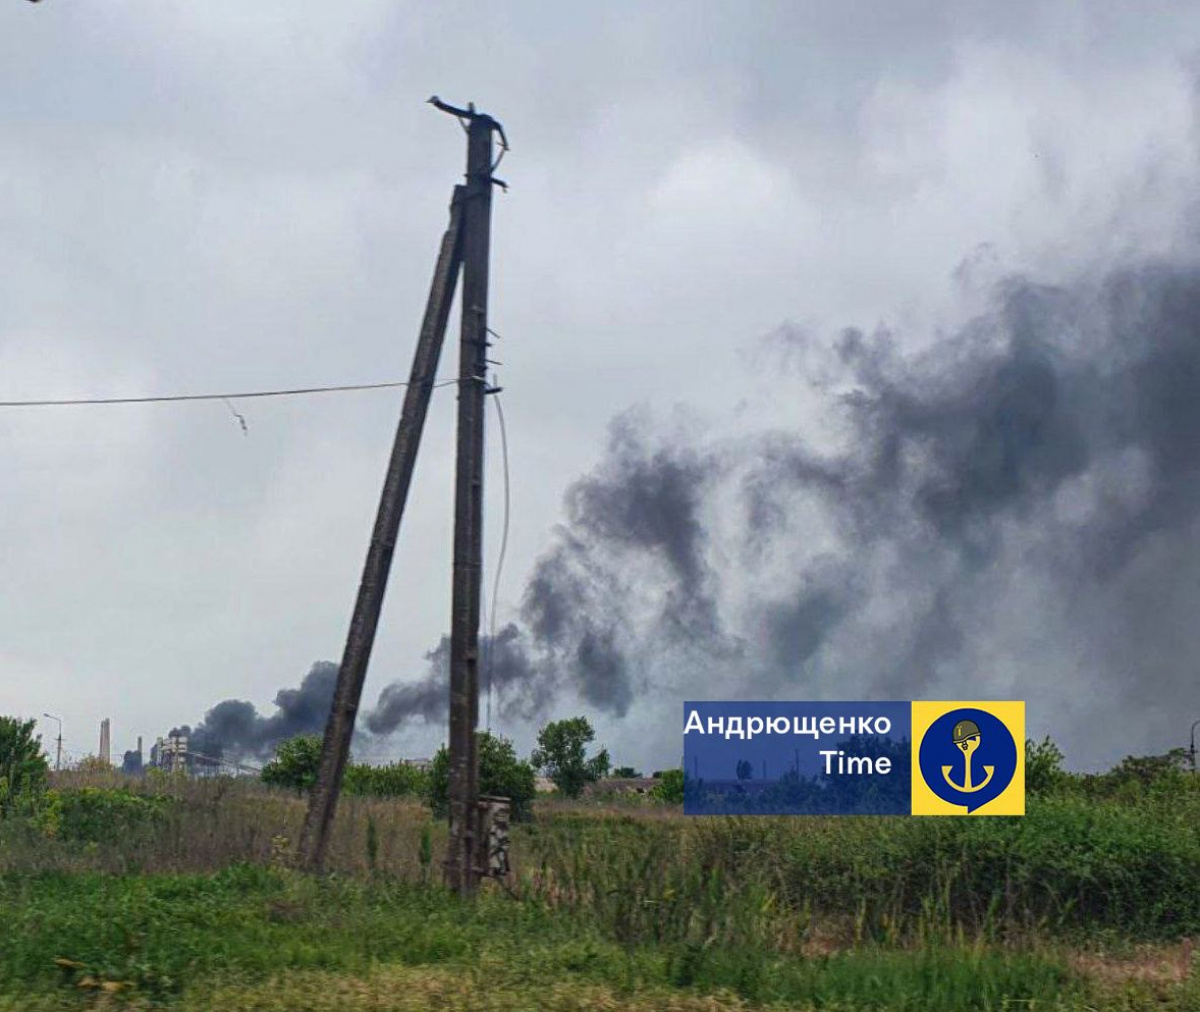 Частина Маріуполя залишилася без світла через пожежу на «Азовсталі». Фото: Андрющенко Time/Telegram 